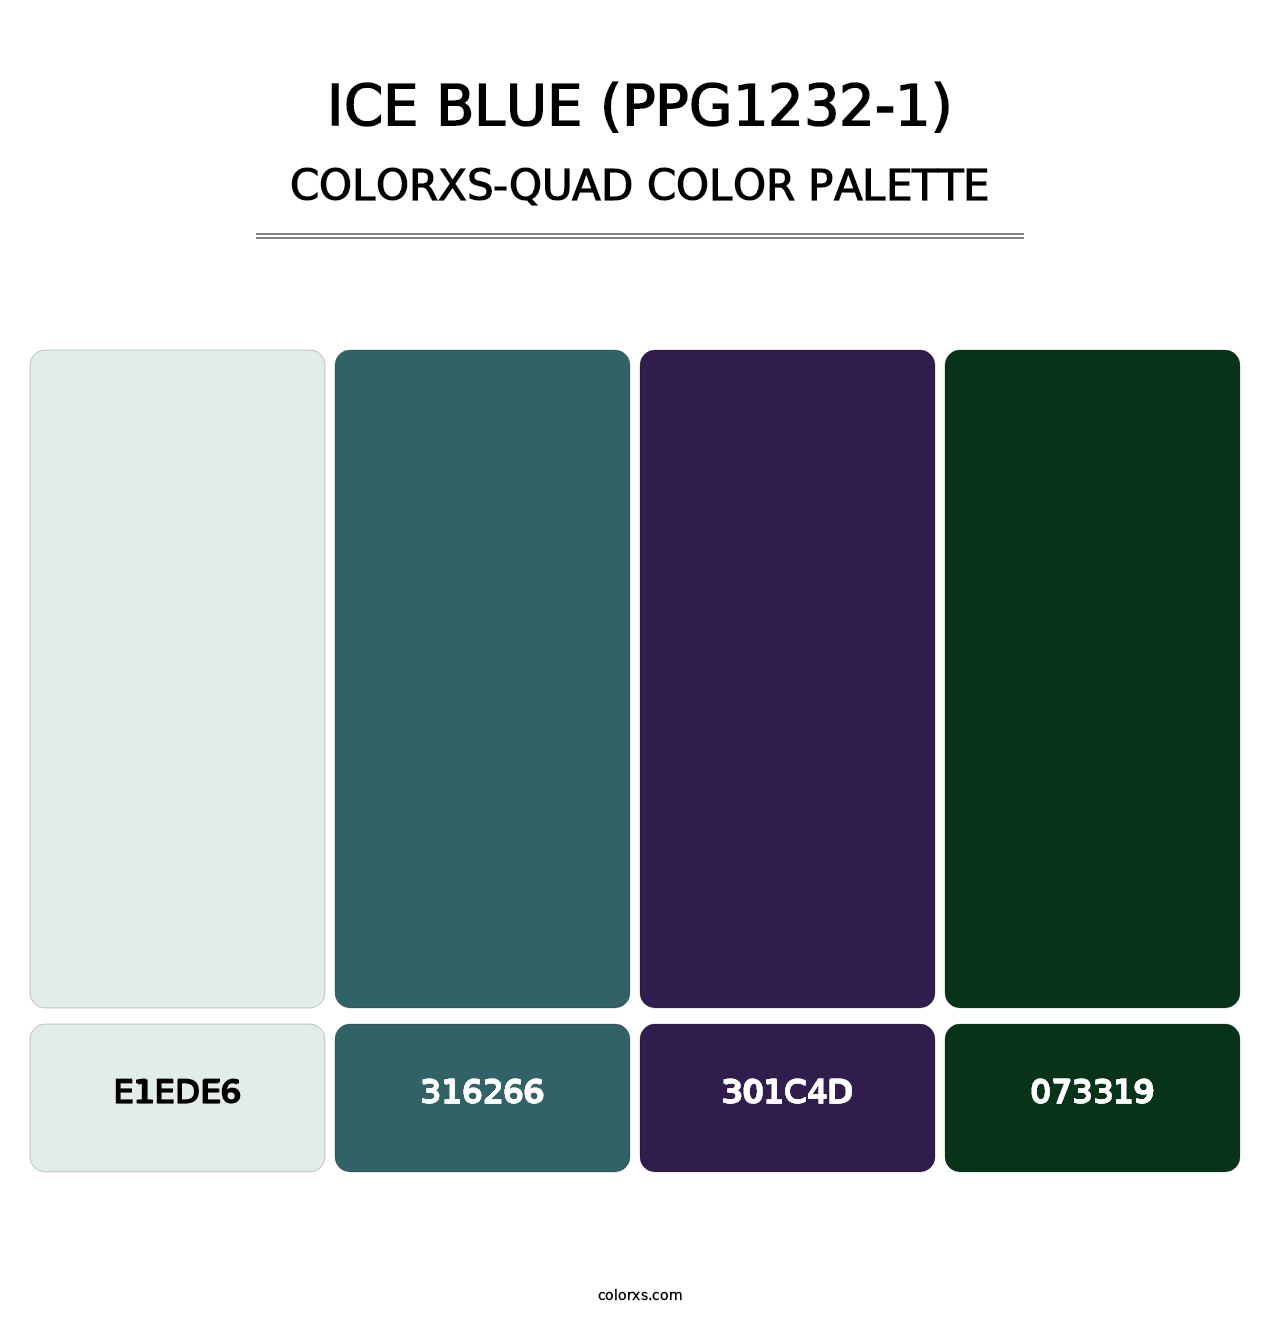 Ice Blue (PPG1232-1) - Colorxs Quad Palette